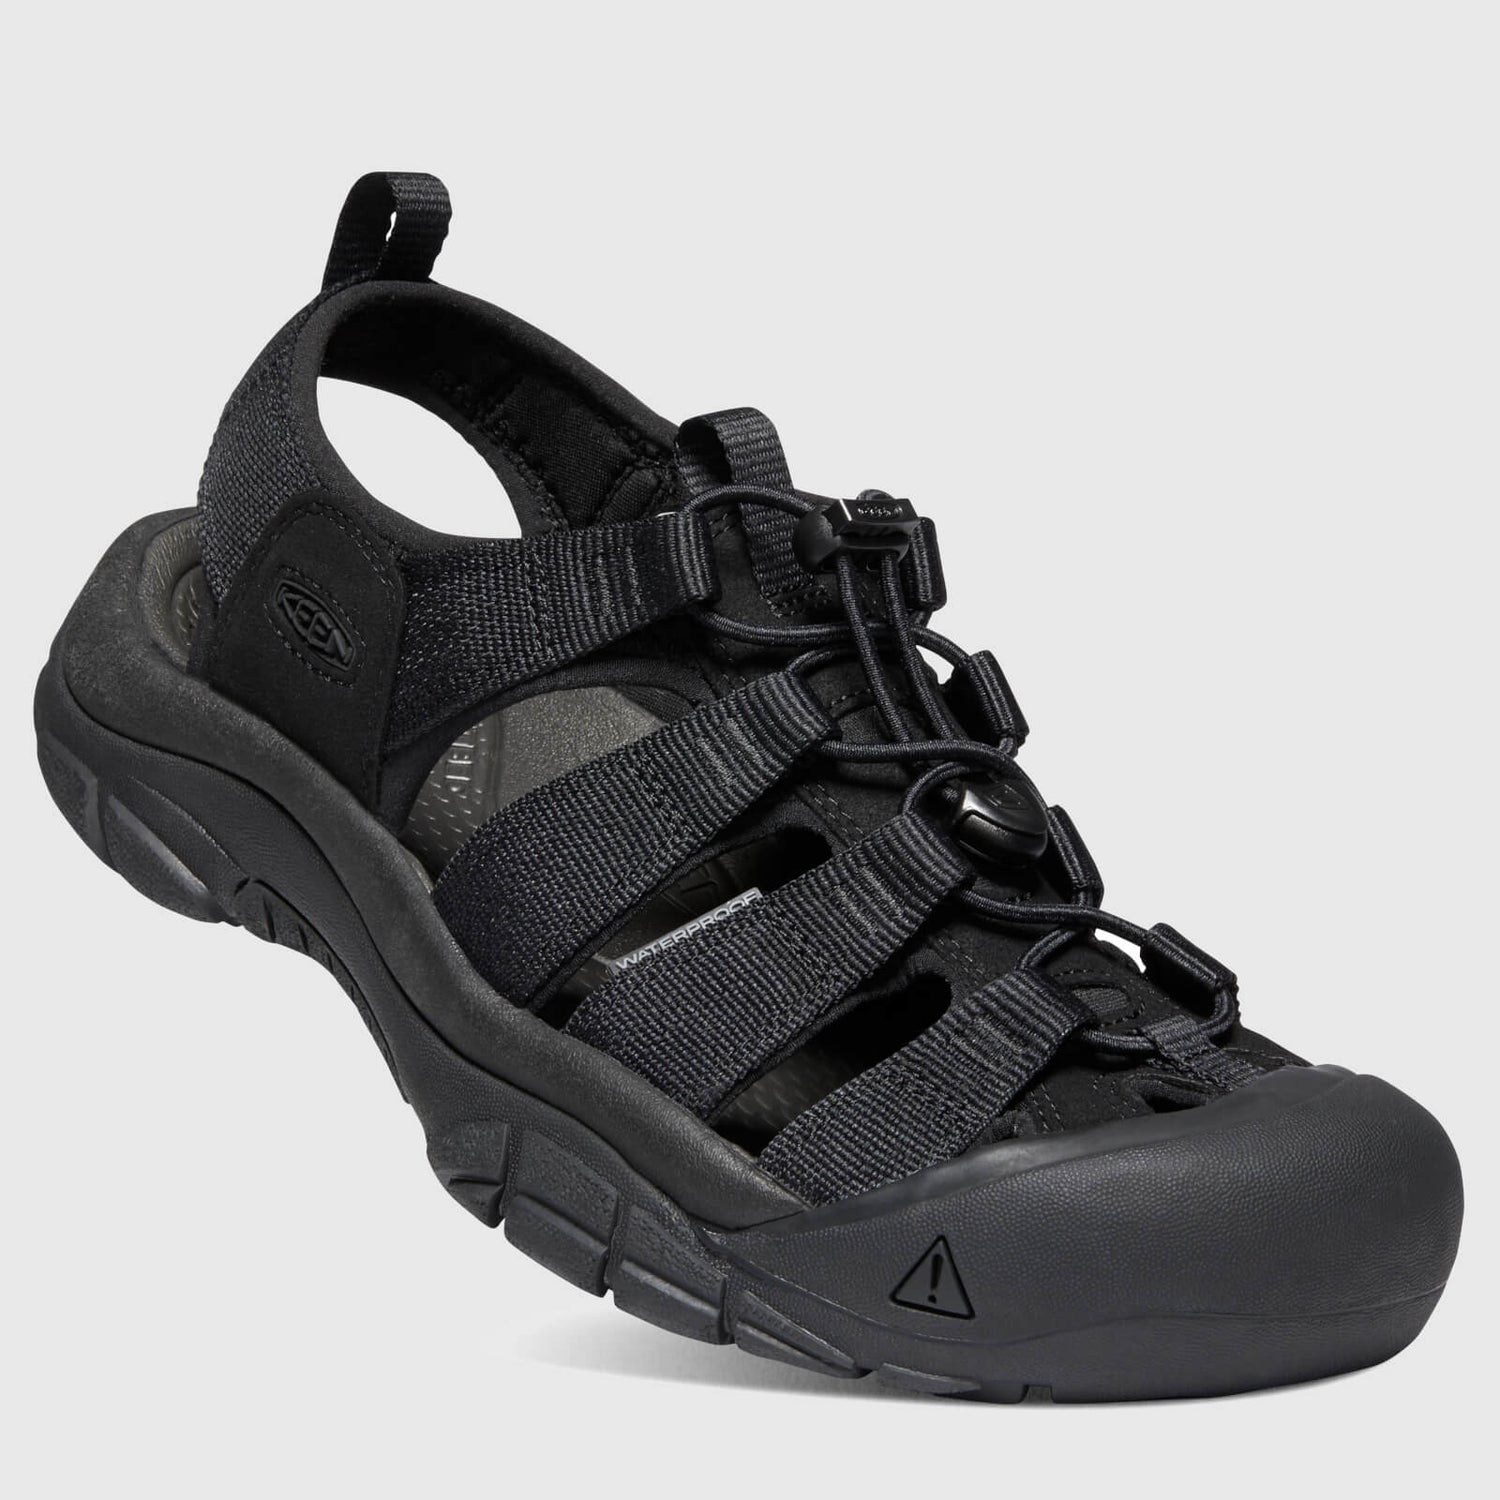 Keen Men's Newport H2 Sandals - Triple Black - UK 7